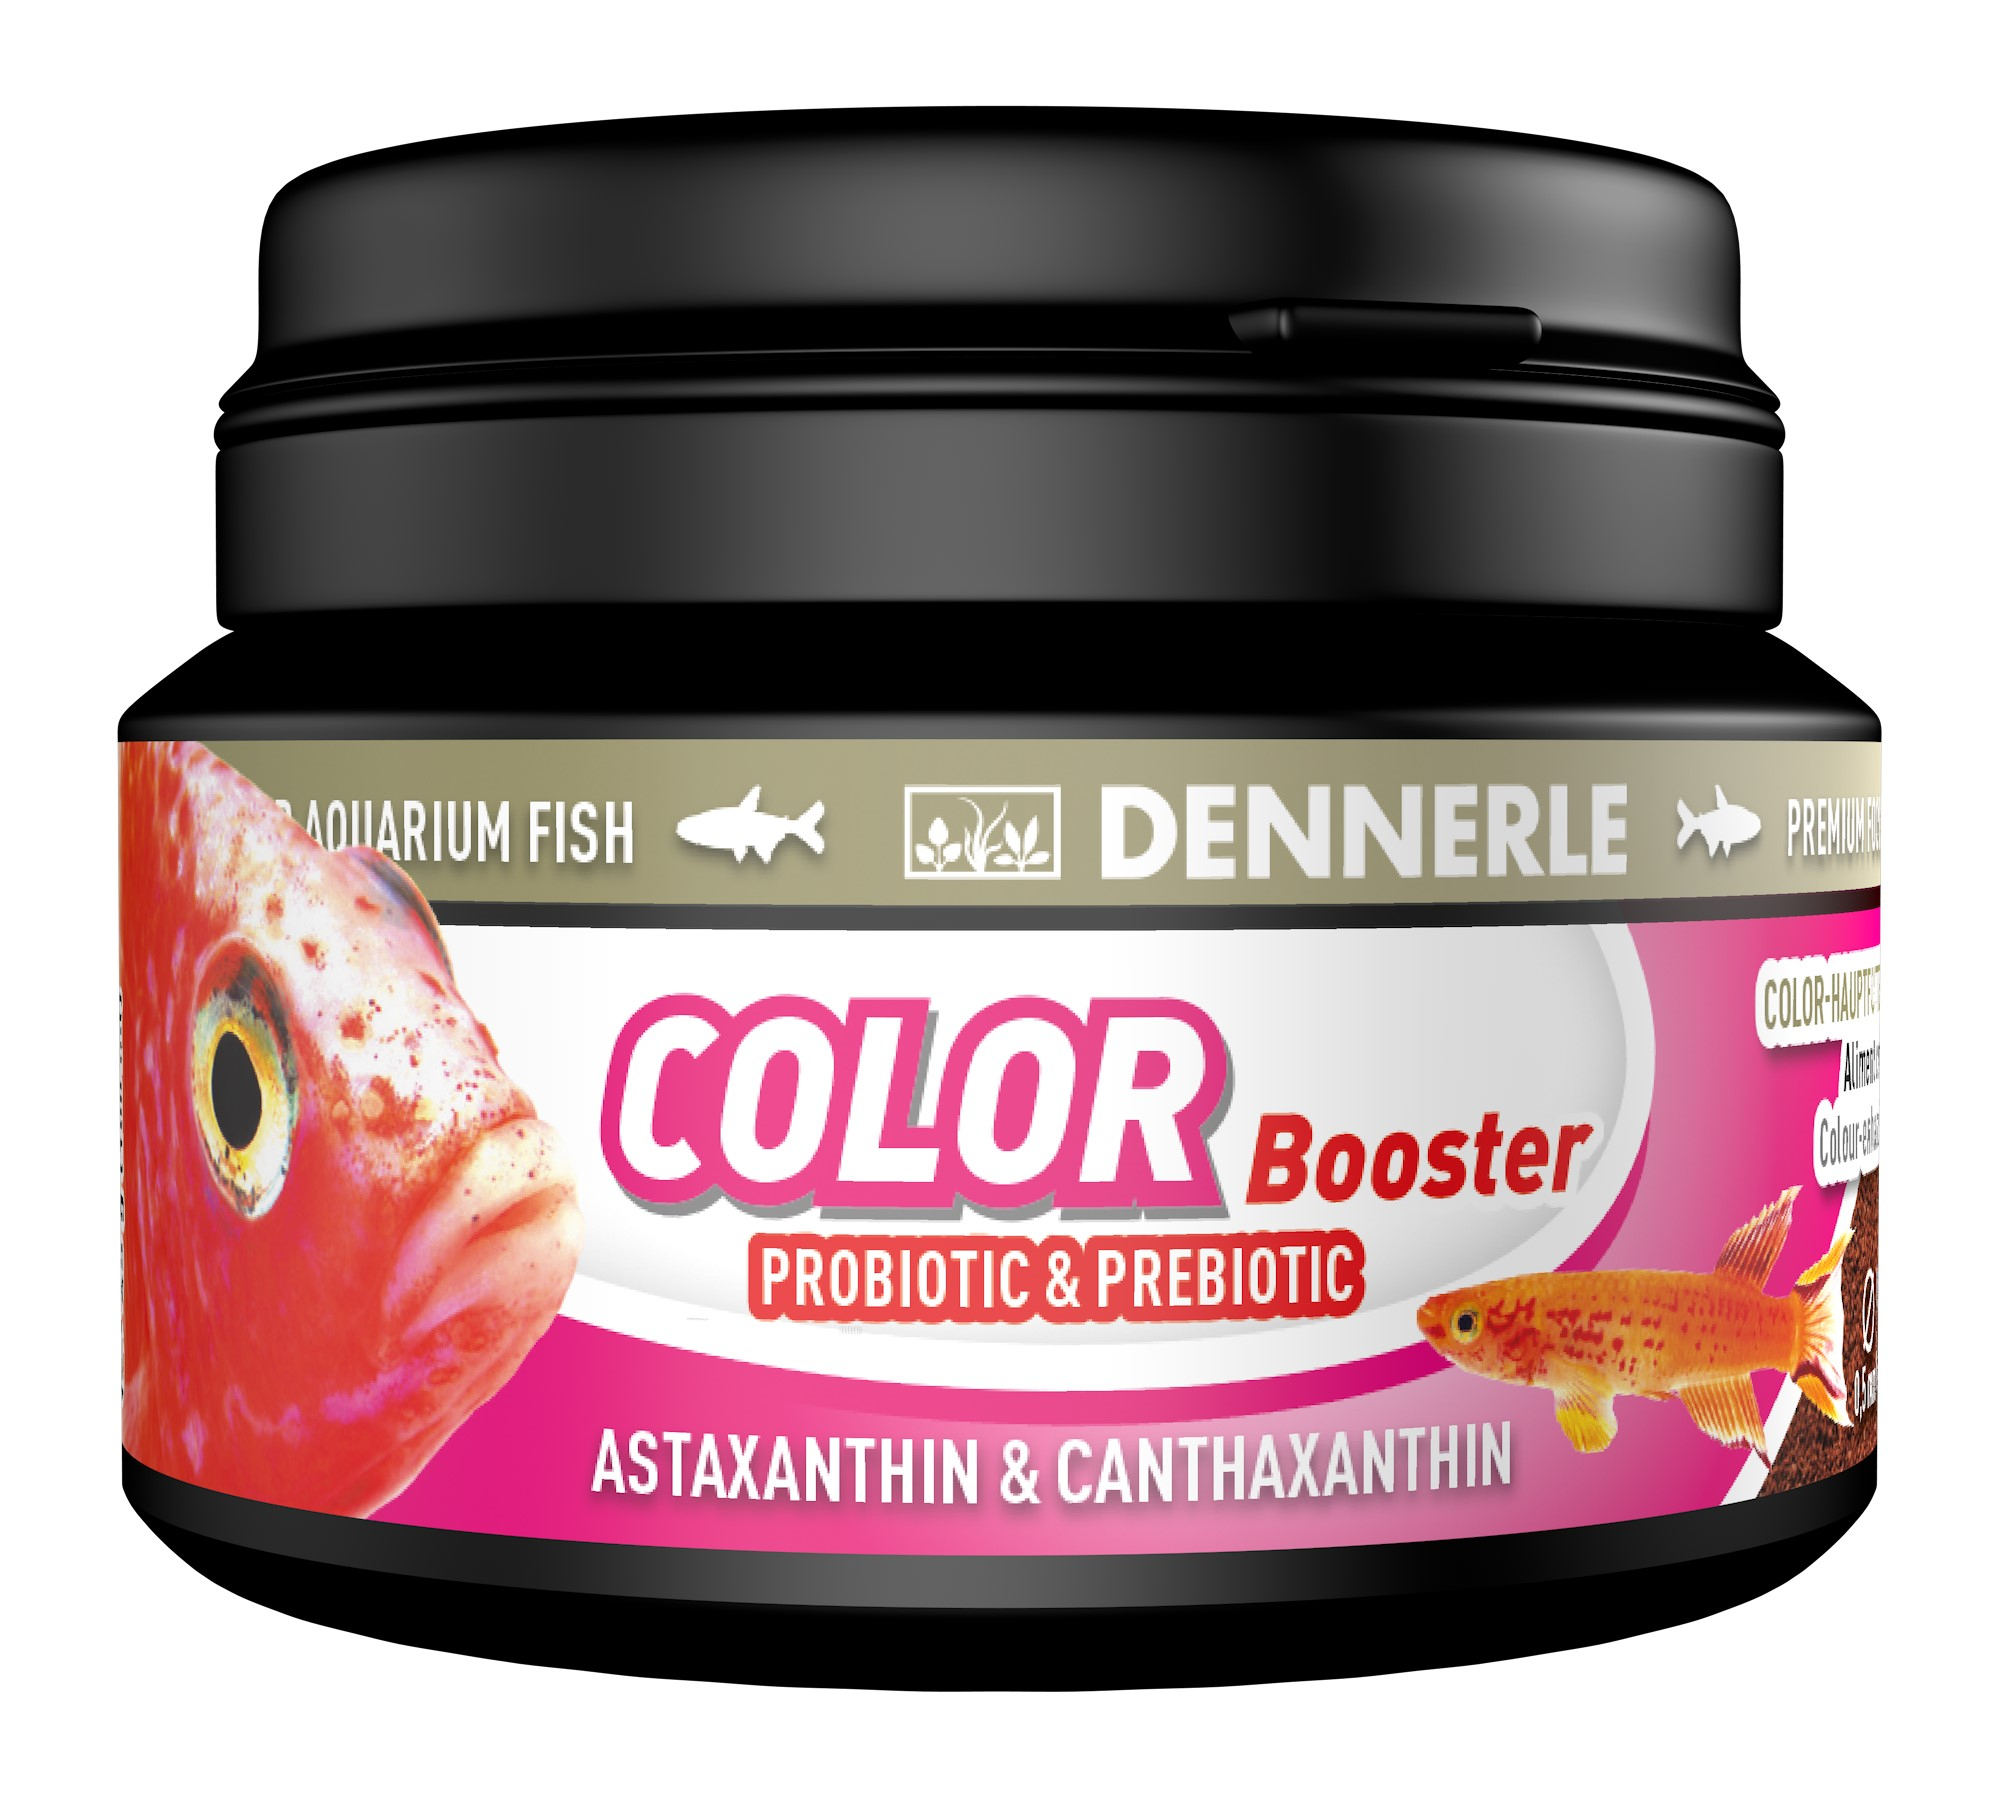 Dennerle Color Booster prebiotico e probiotico per pesci d'acquario